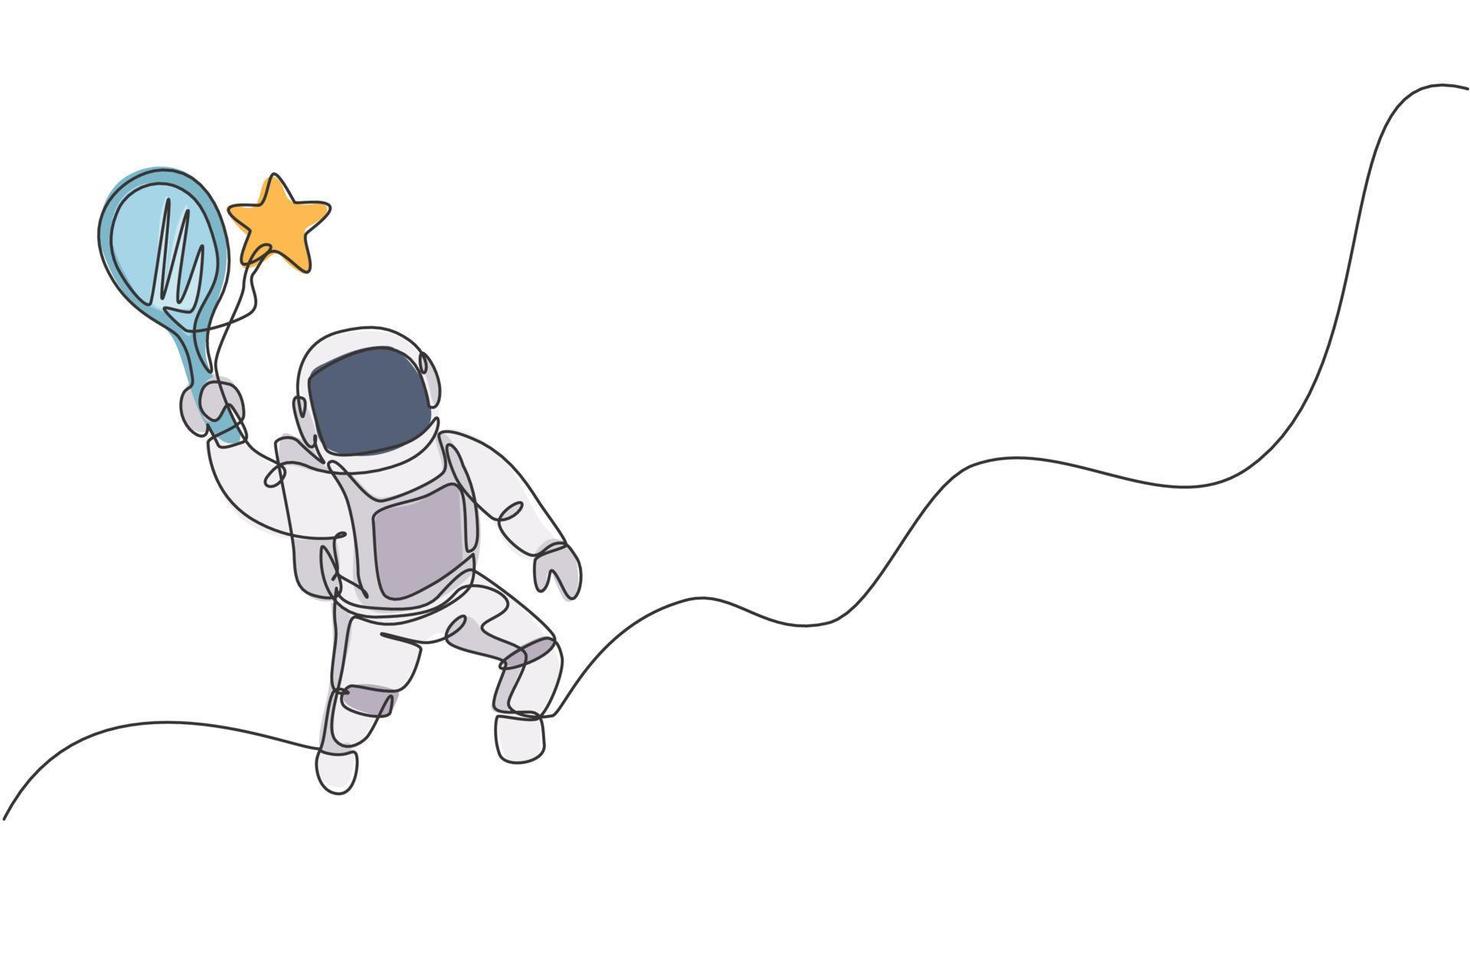 desenho de linha única contínua do astronauta flutuante da ciência em uma caminhada no espaço atingindo uma estrela usando a raquete. exploração do espaço profundo de fantasia, conceito de ficção. ilustração em vetor desenho desenho de uma linha na moda